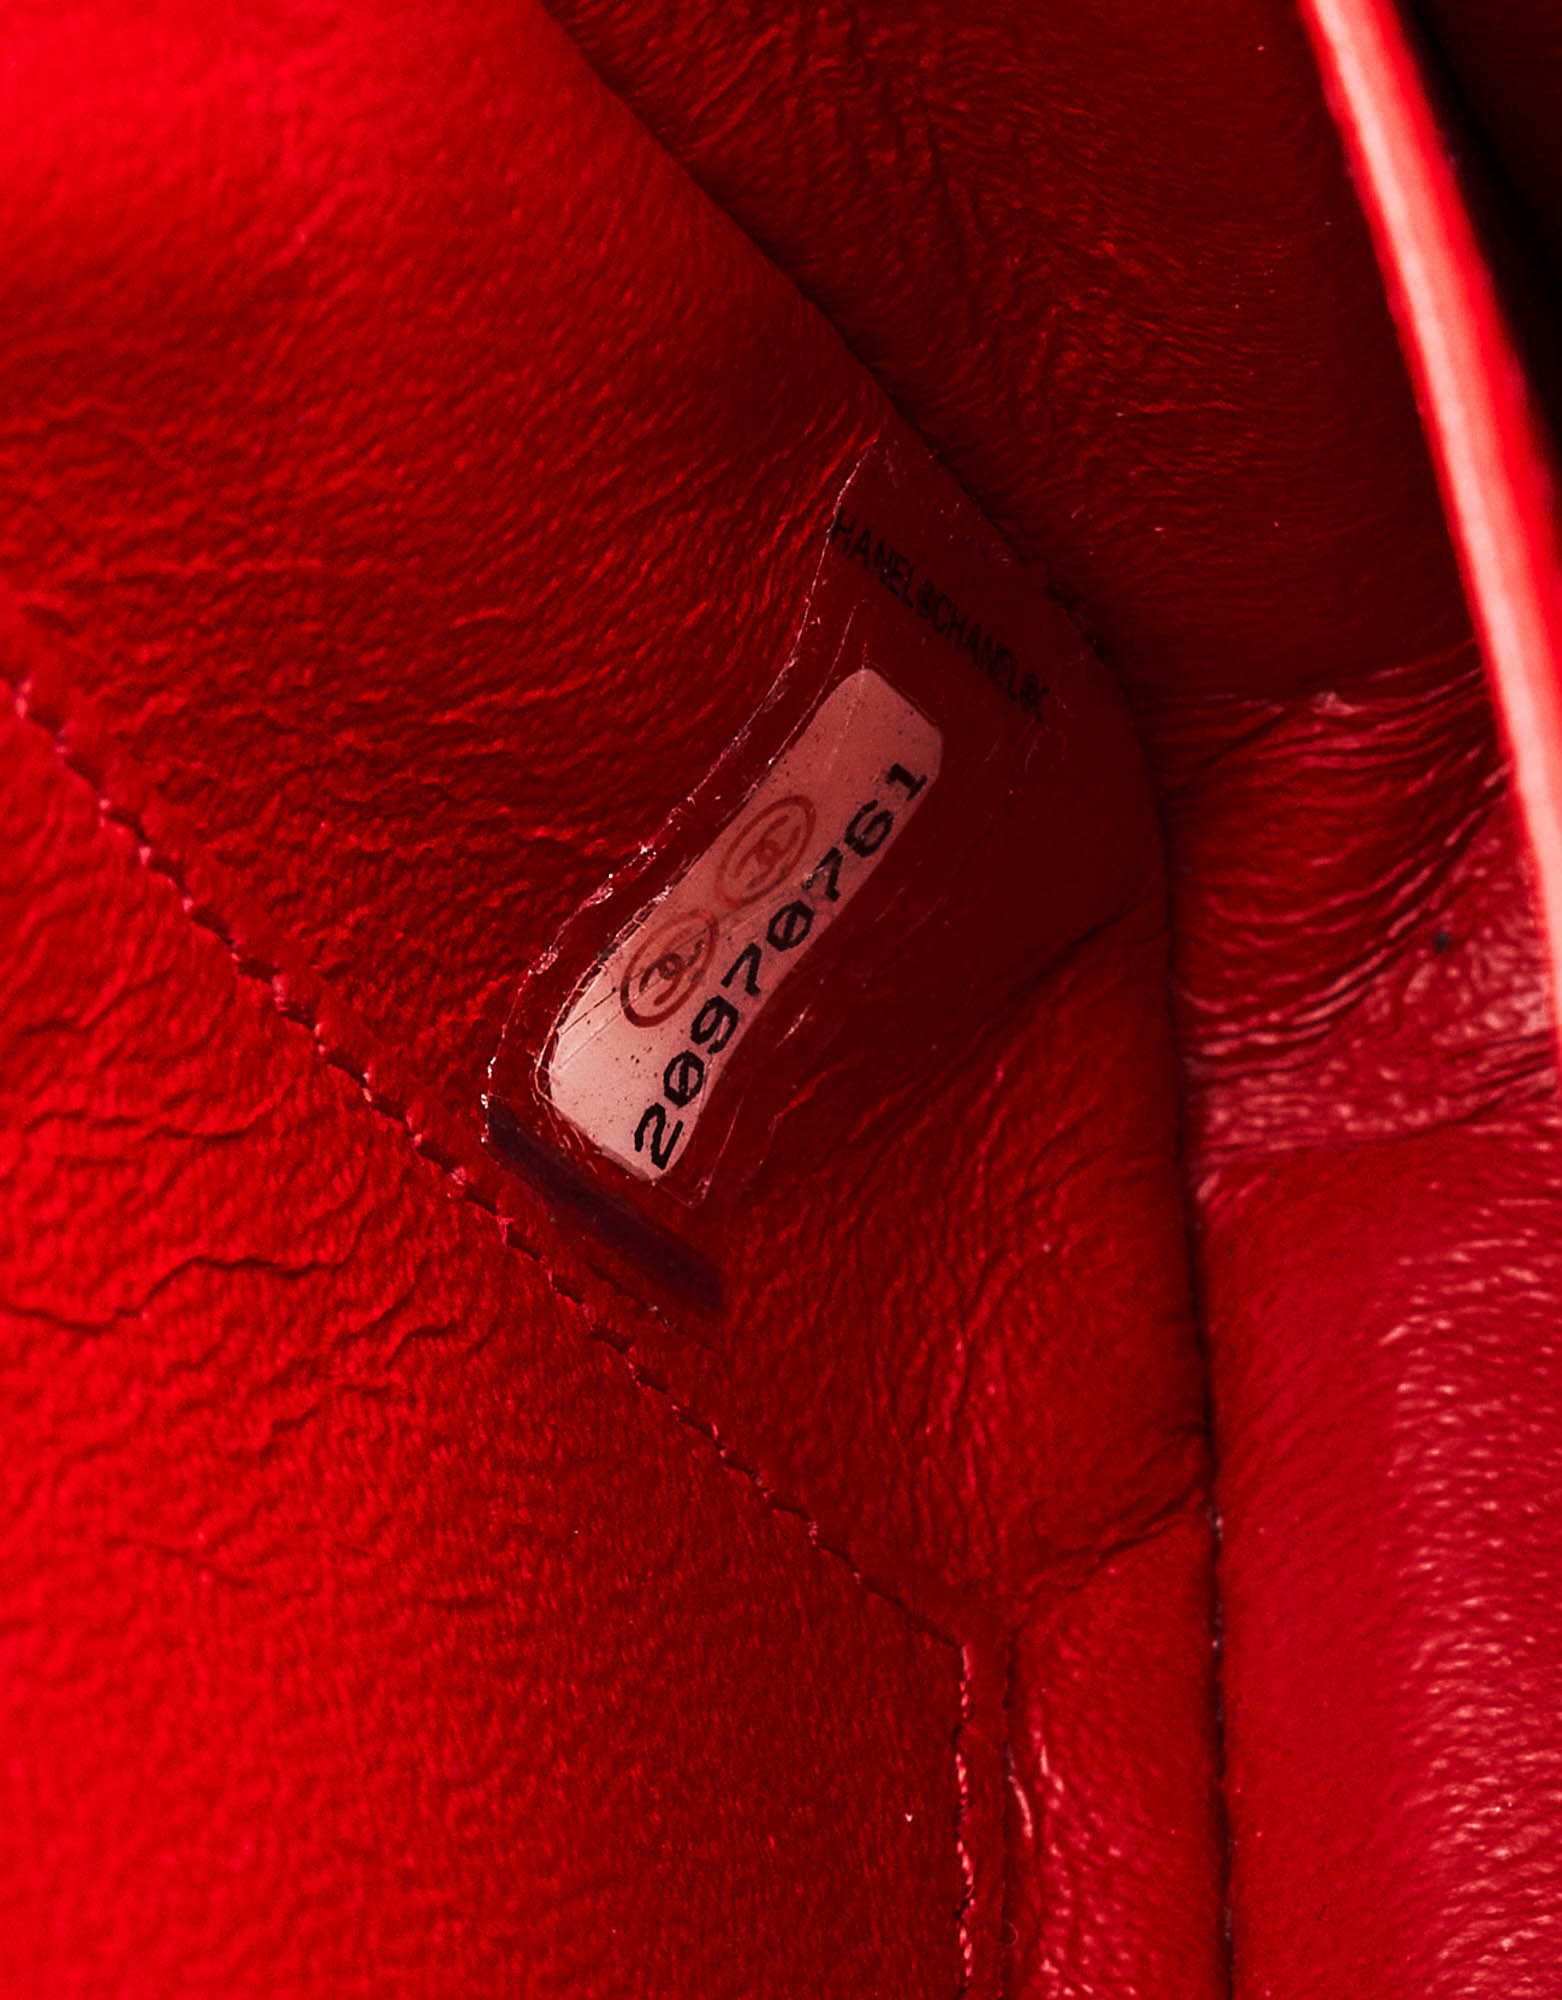 Chanel Timeless Mini-Tasche Lackleder Rot